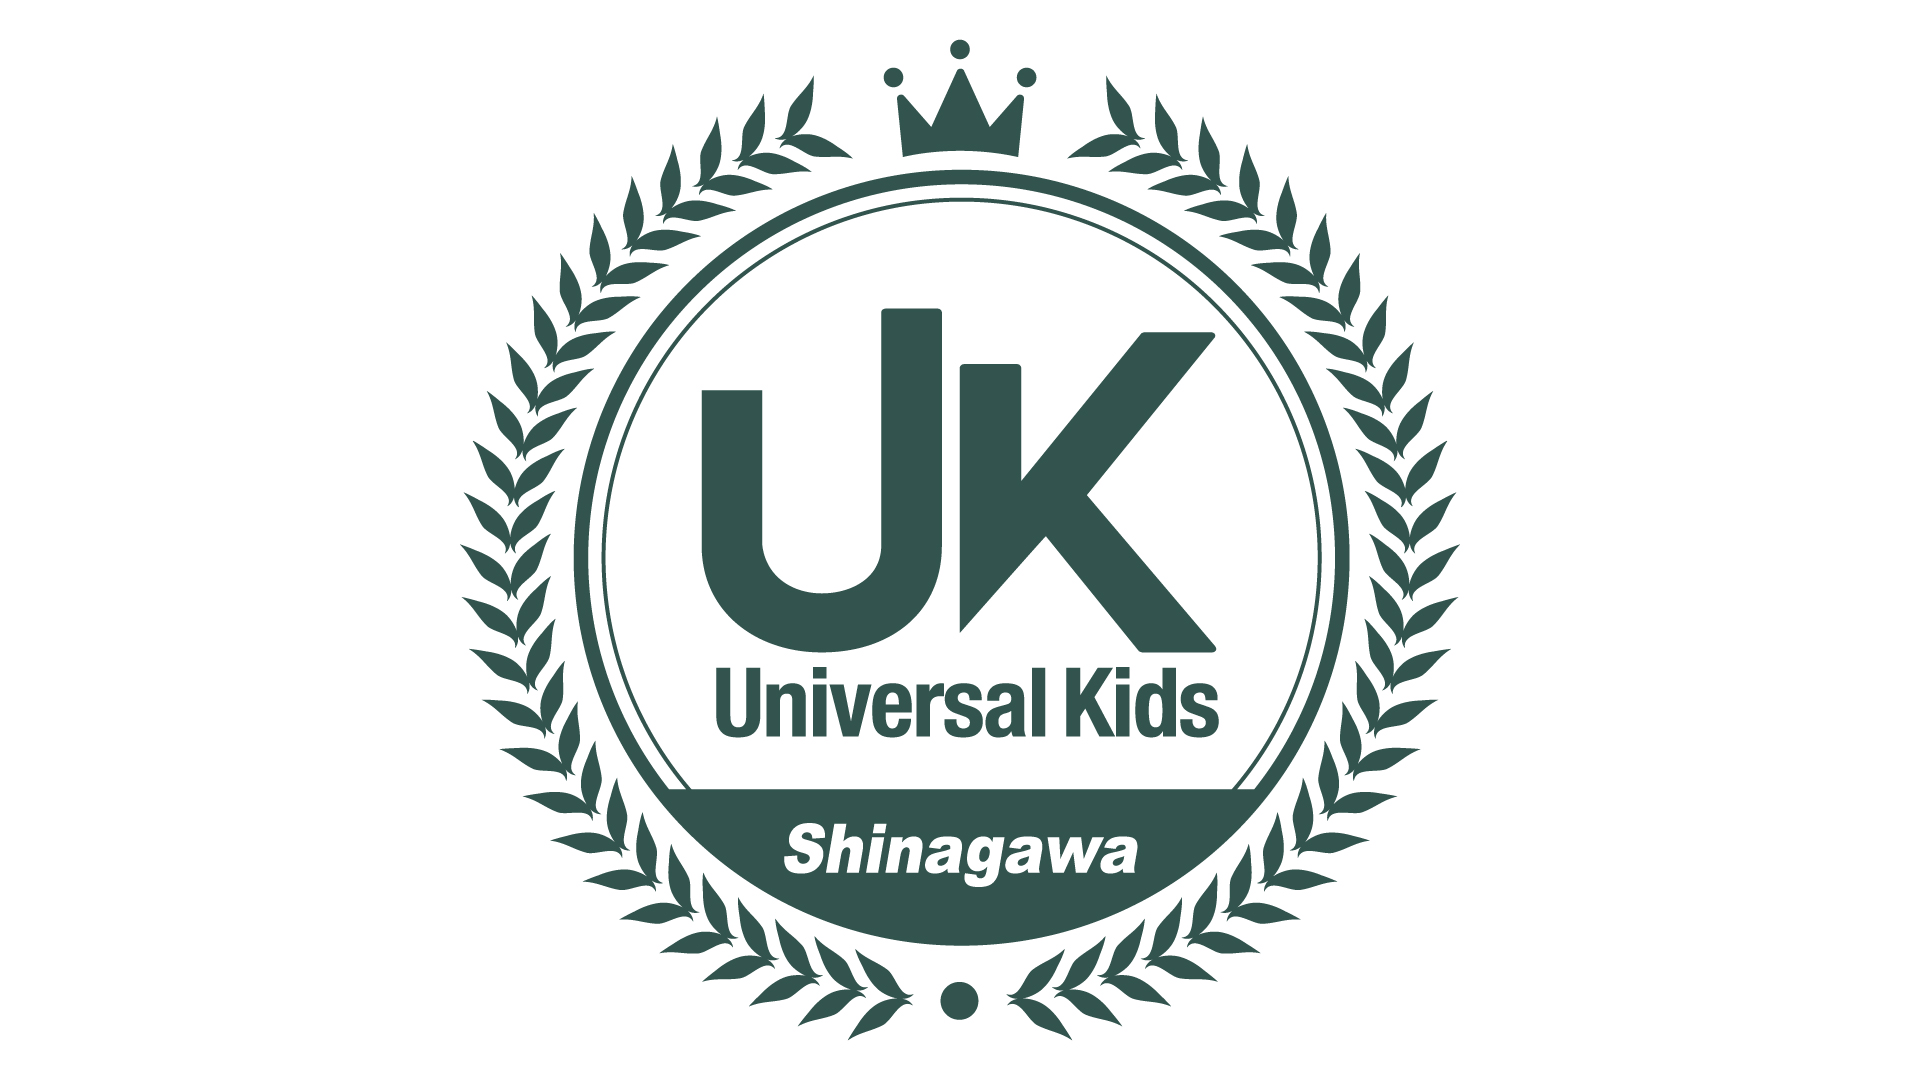 Universal Kids Shinagawa